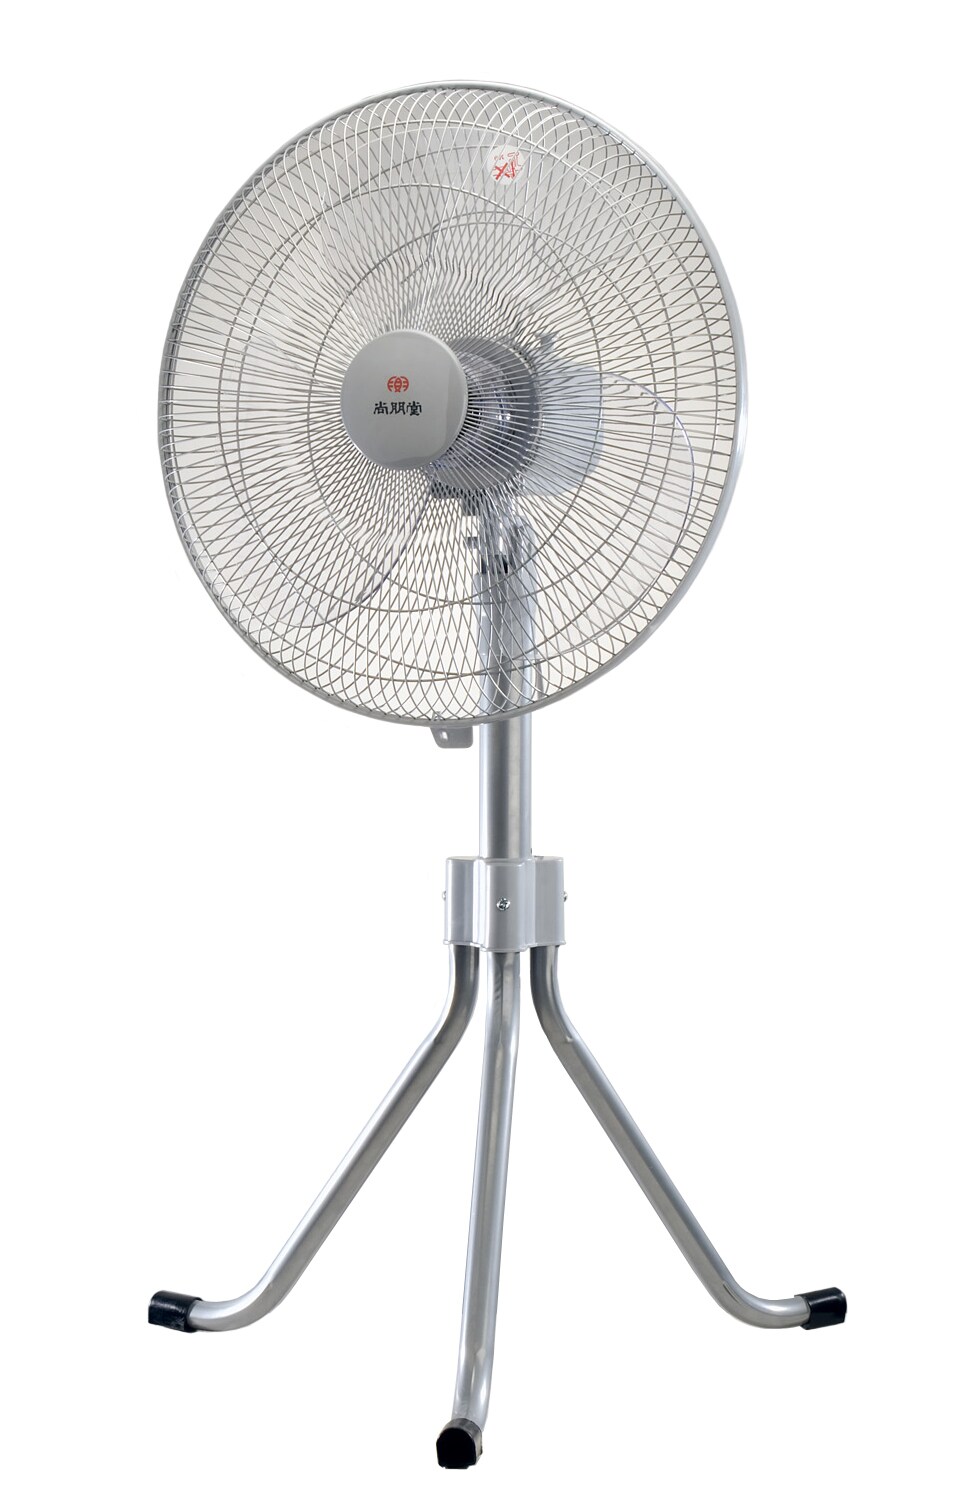 VENTILATORE OSCILLANTE clip 2 velocità fan 2 speed diam 18cm oscillating fan 